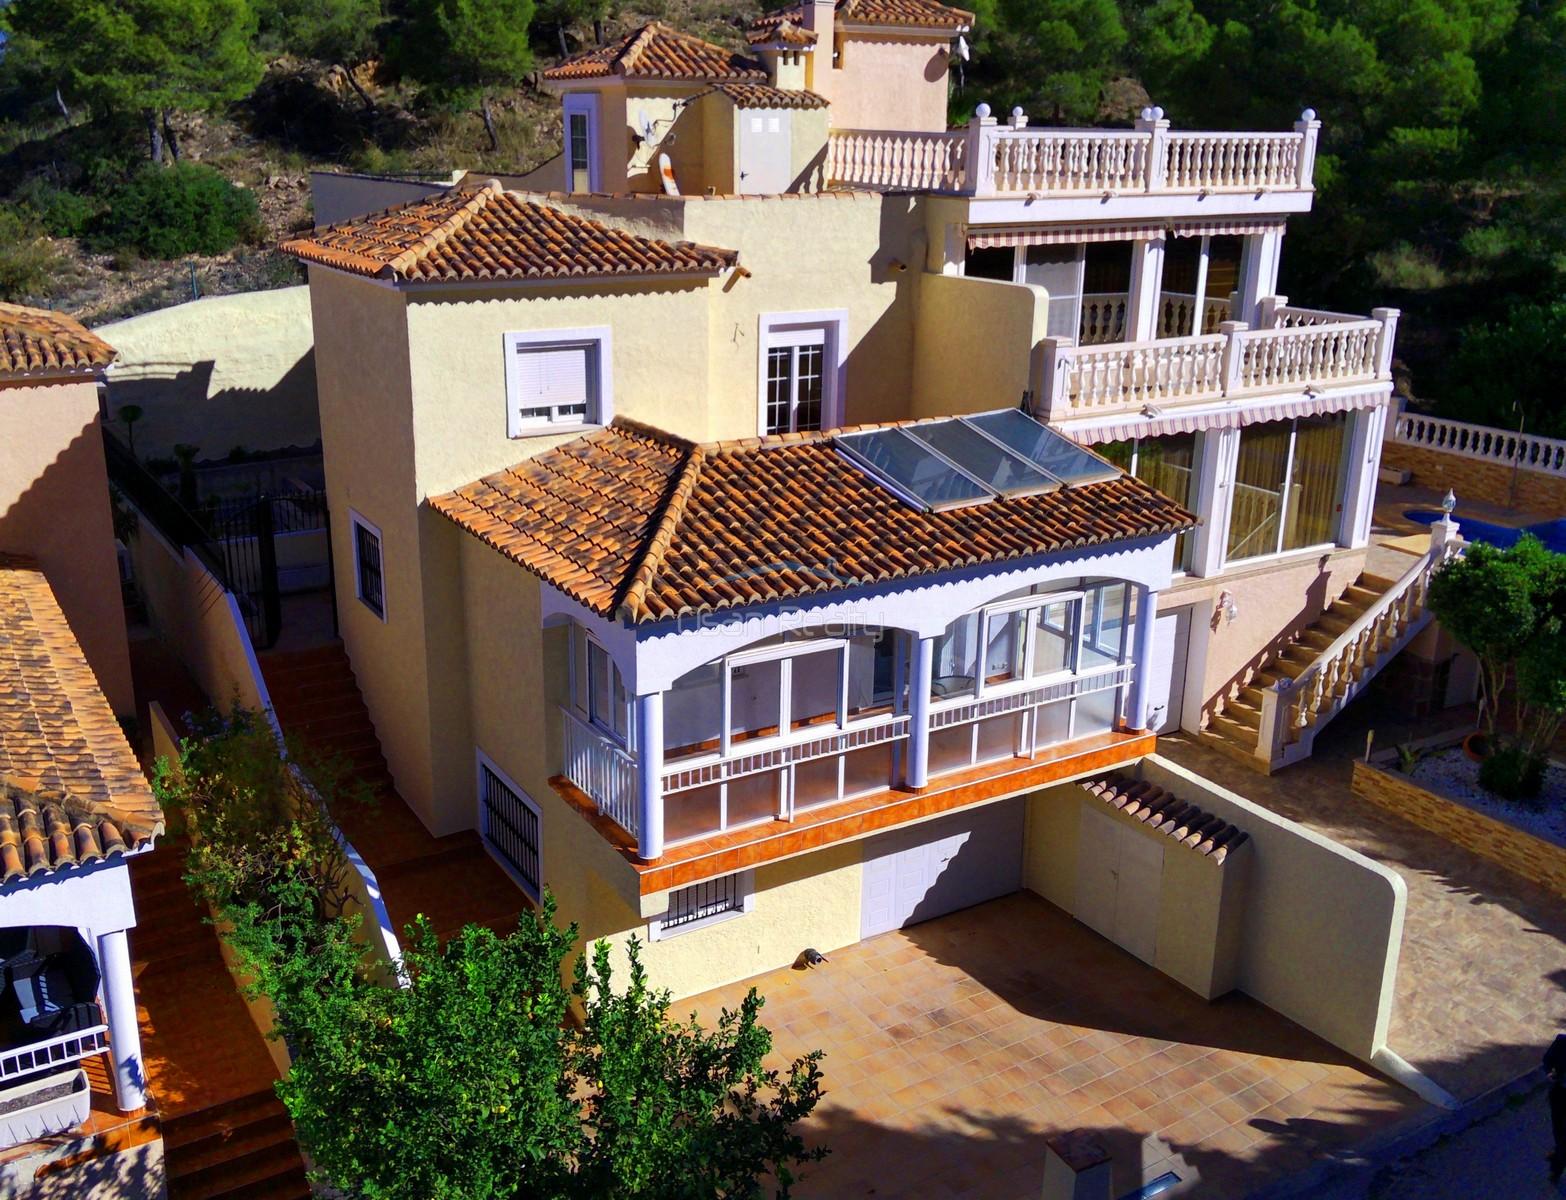 Verkoop van huis in Alfaz del Pi